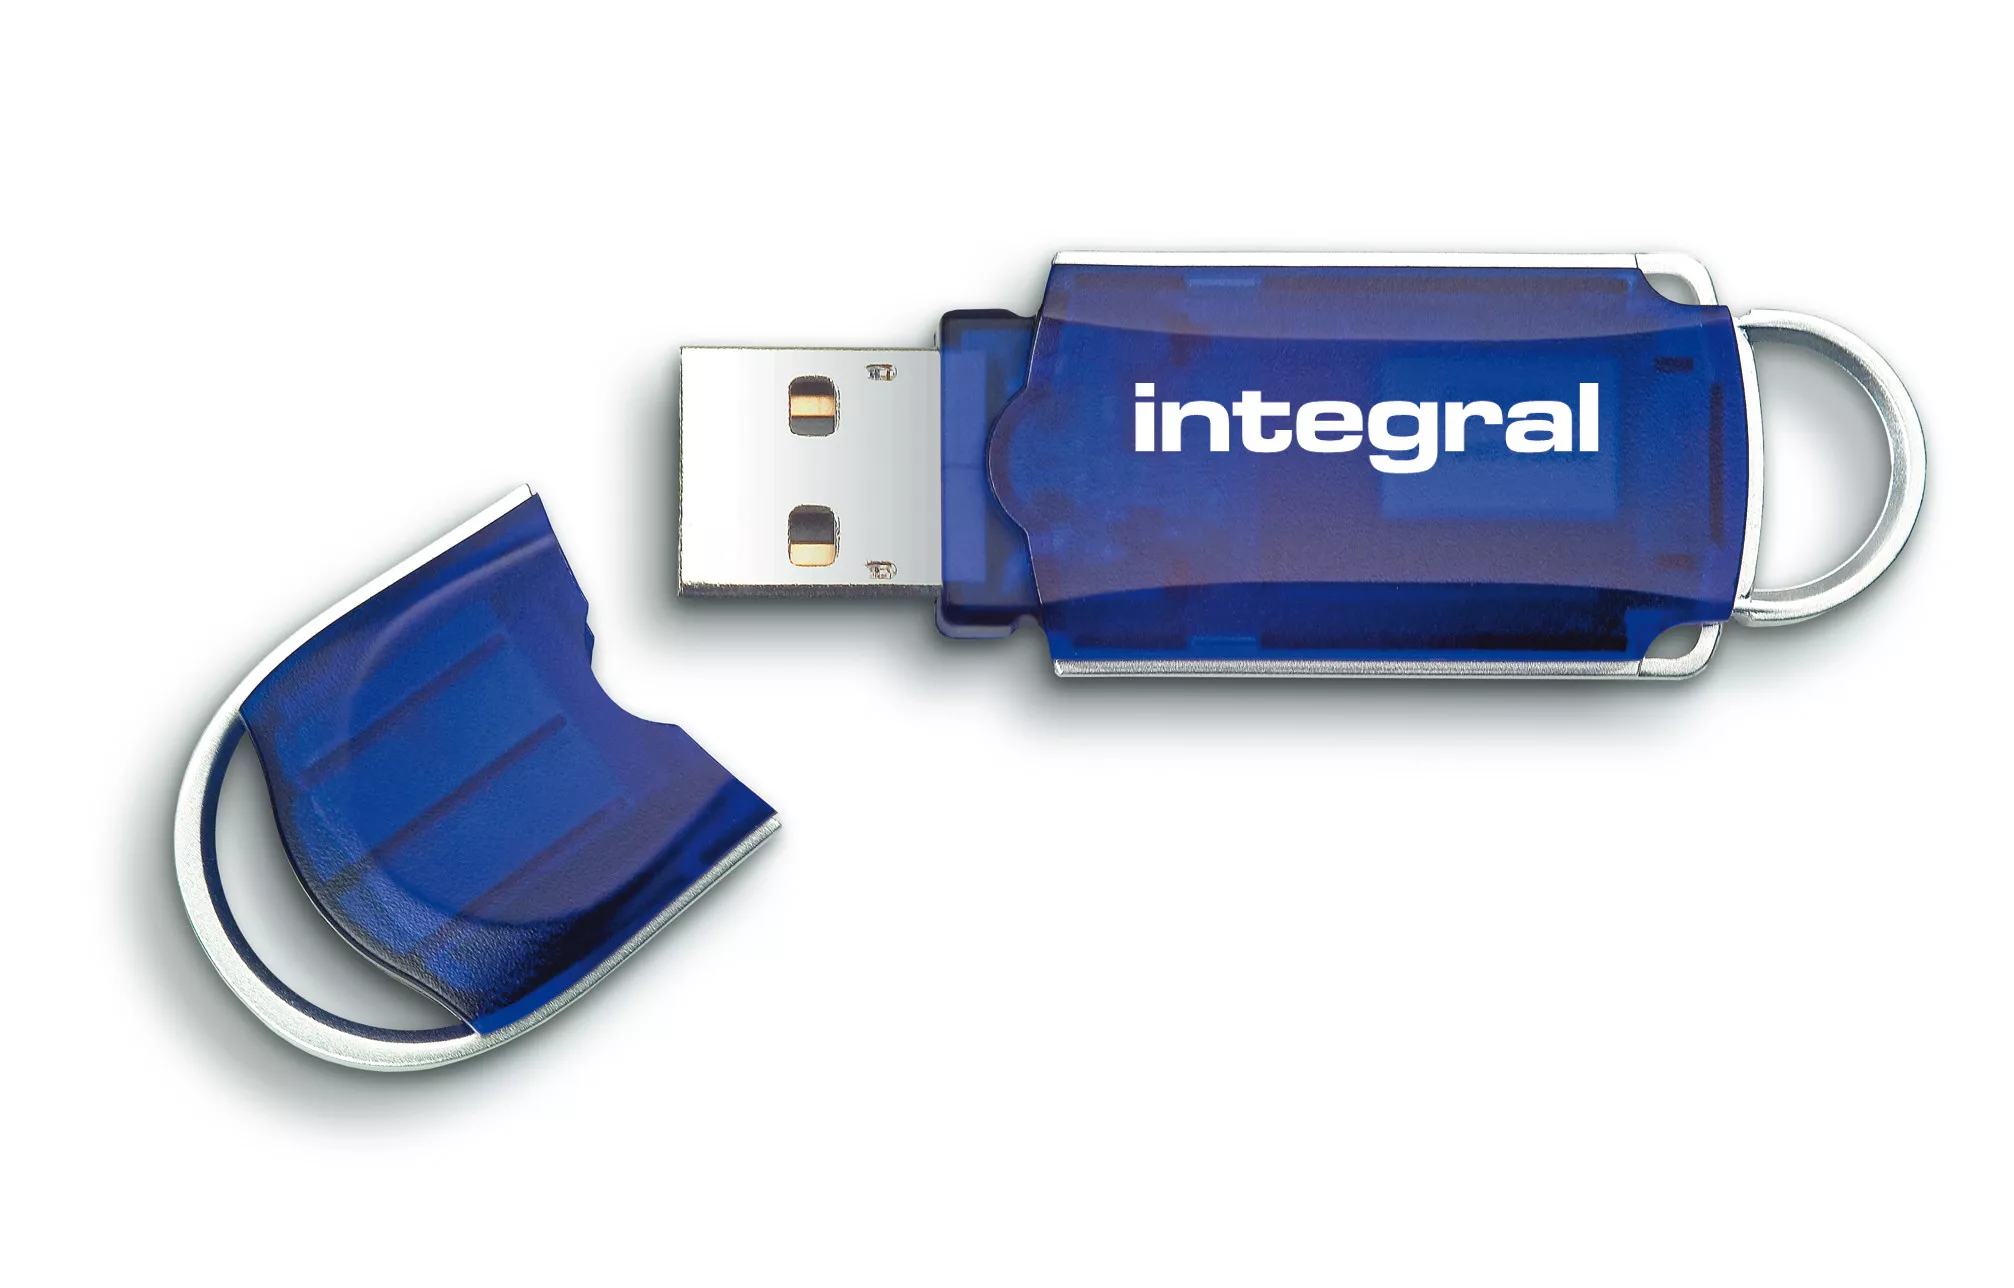 Achat Integral 256GB USB2.0 DRIVE COURIER BLUE INTEGRAL et autres produits de la marque Integral